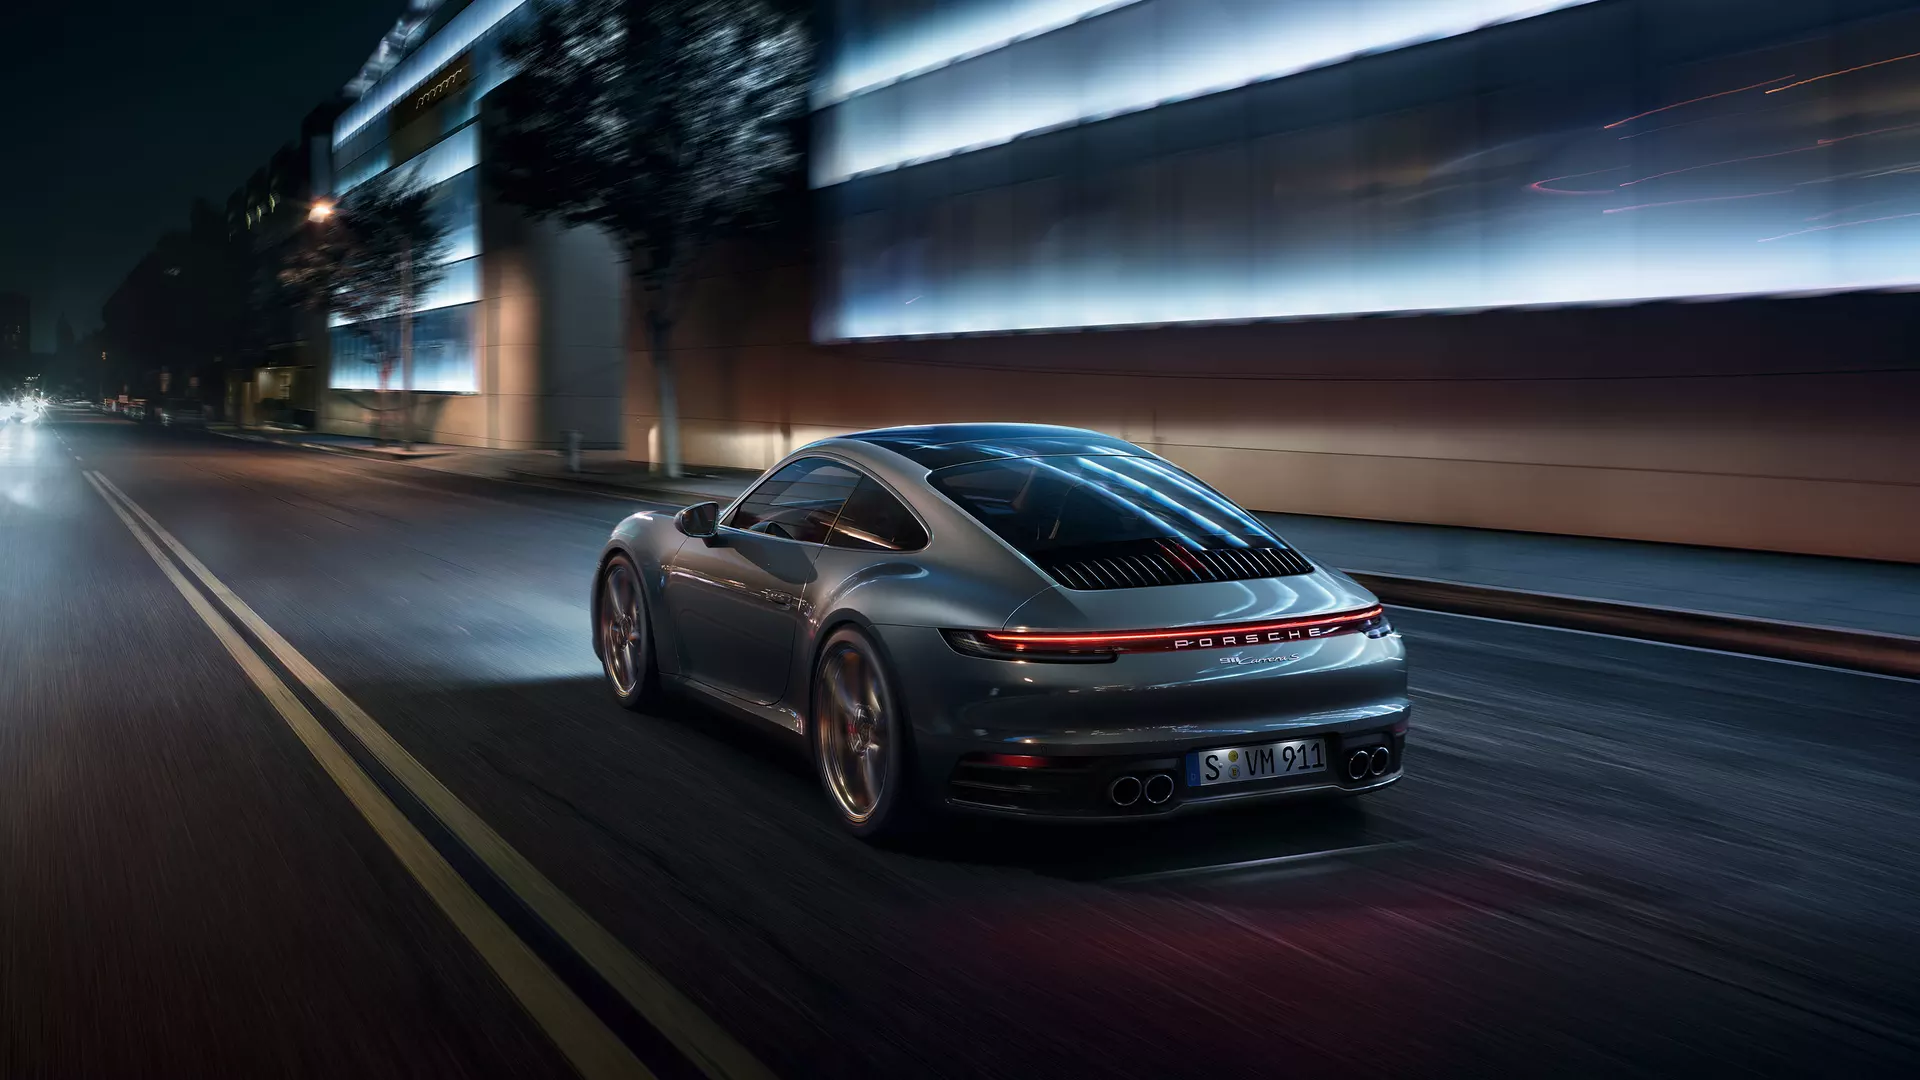 Harmaa Porsche 911 ajamassa yöllä tiellä kaupungissa.